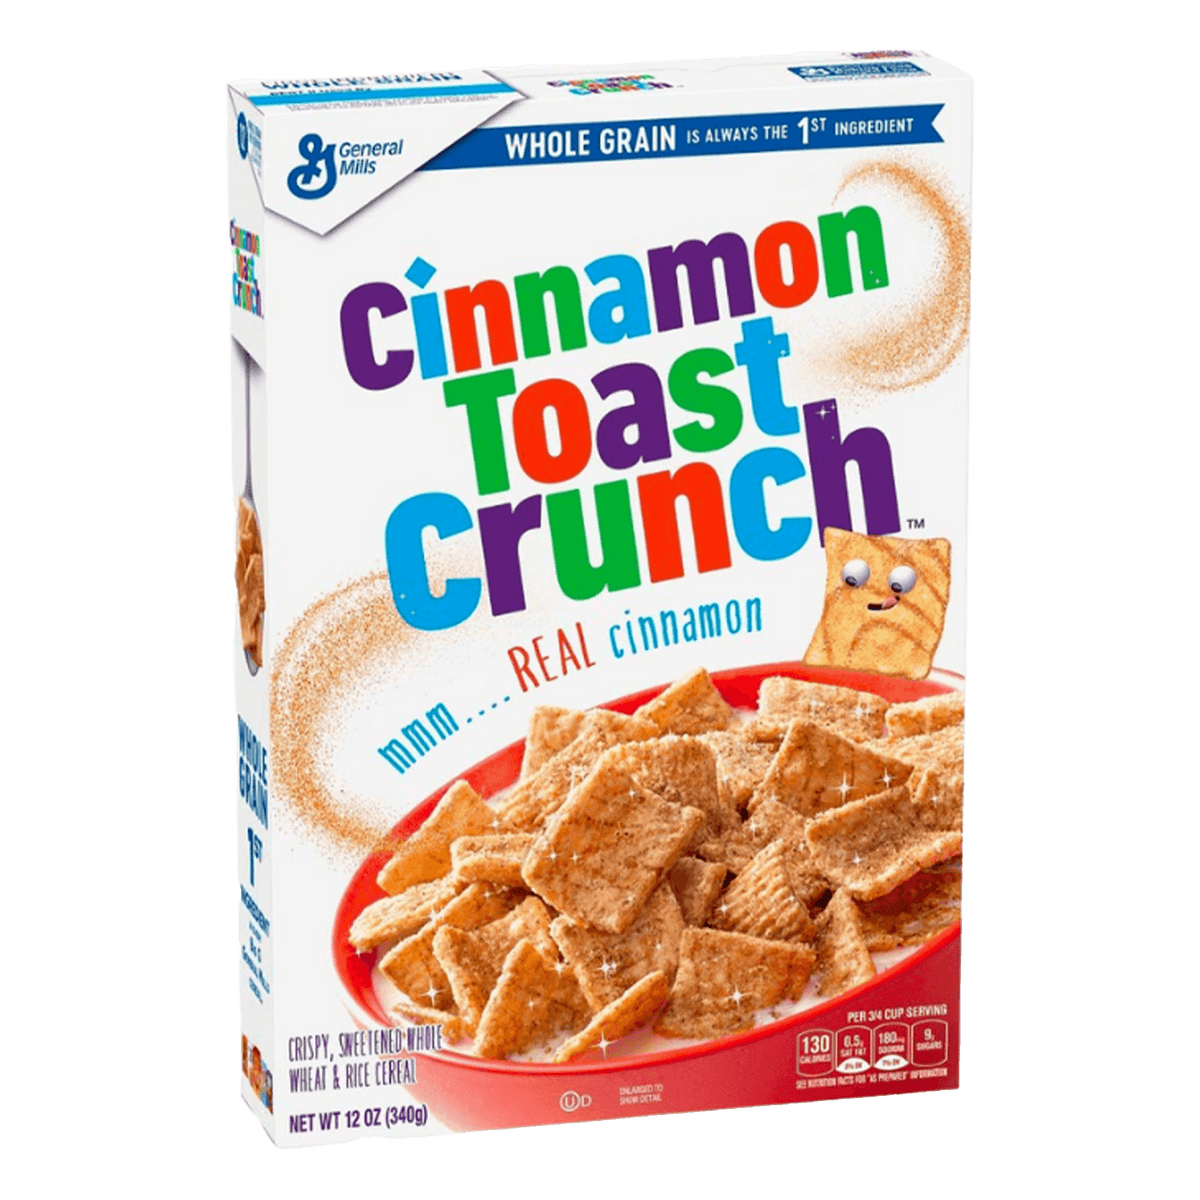 Cinnamon Toast Crunch - Wonka Bar Official